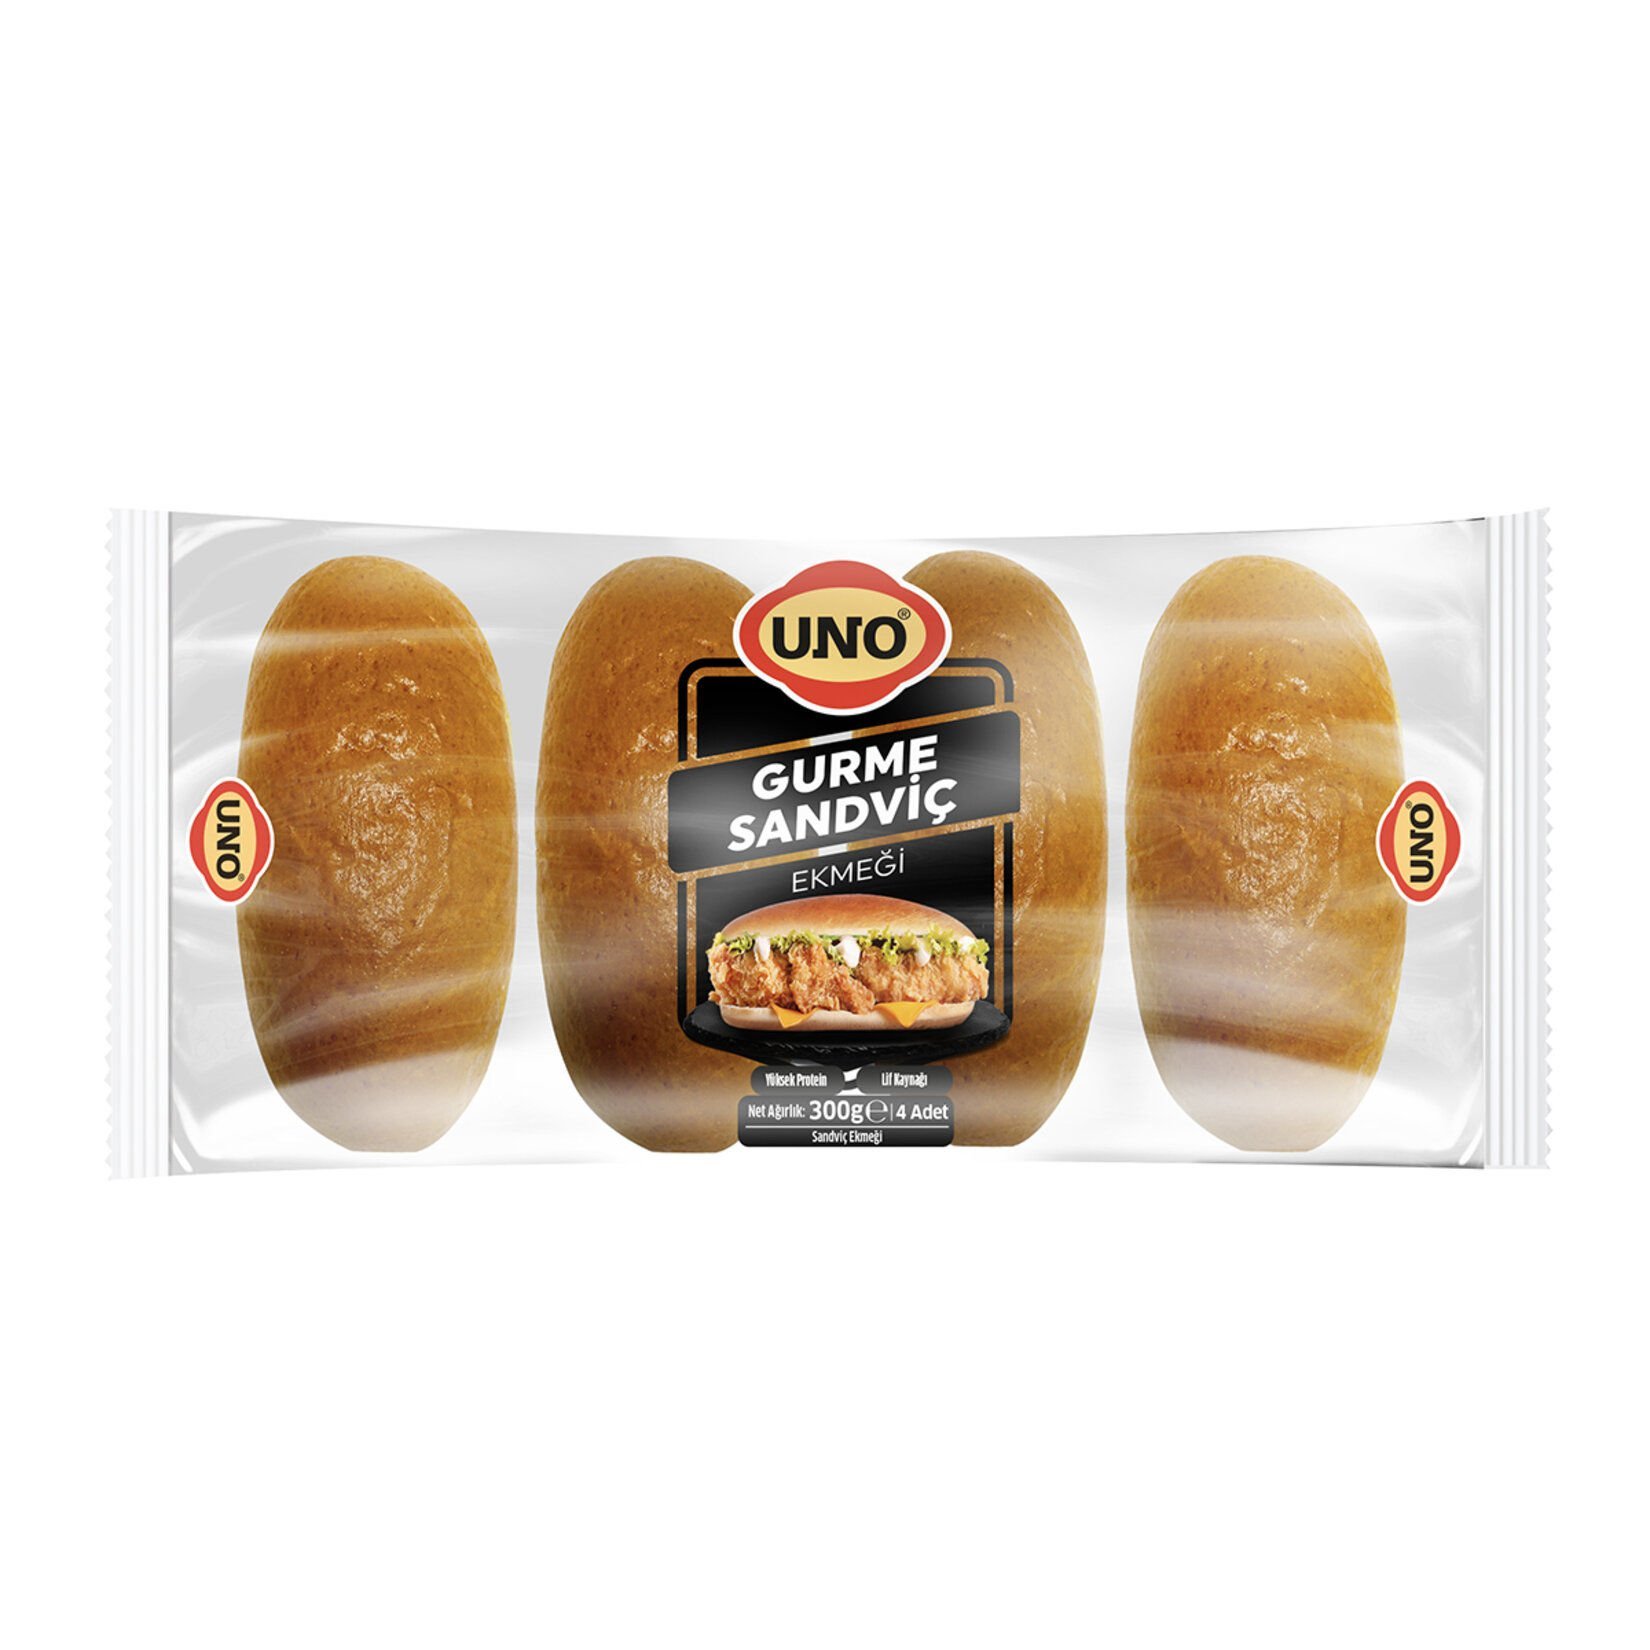 Uno Gurme Sandviç Ekmeği 4lü 300gr